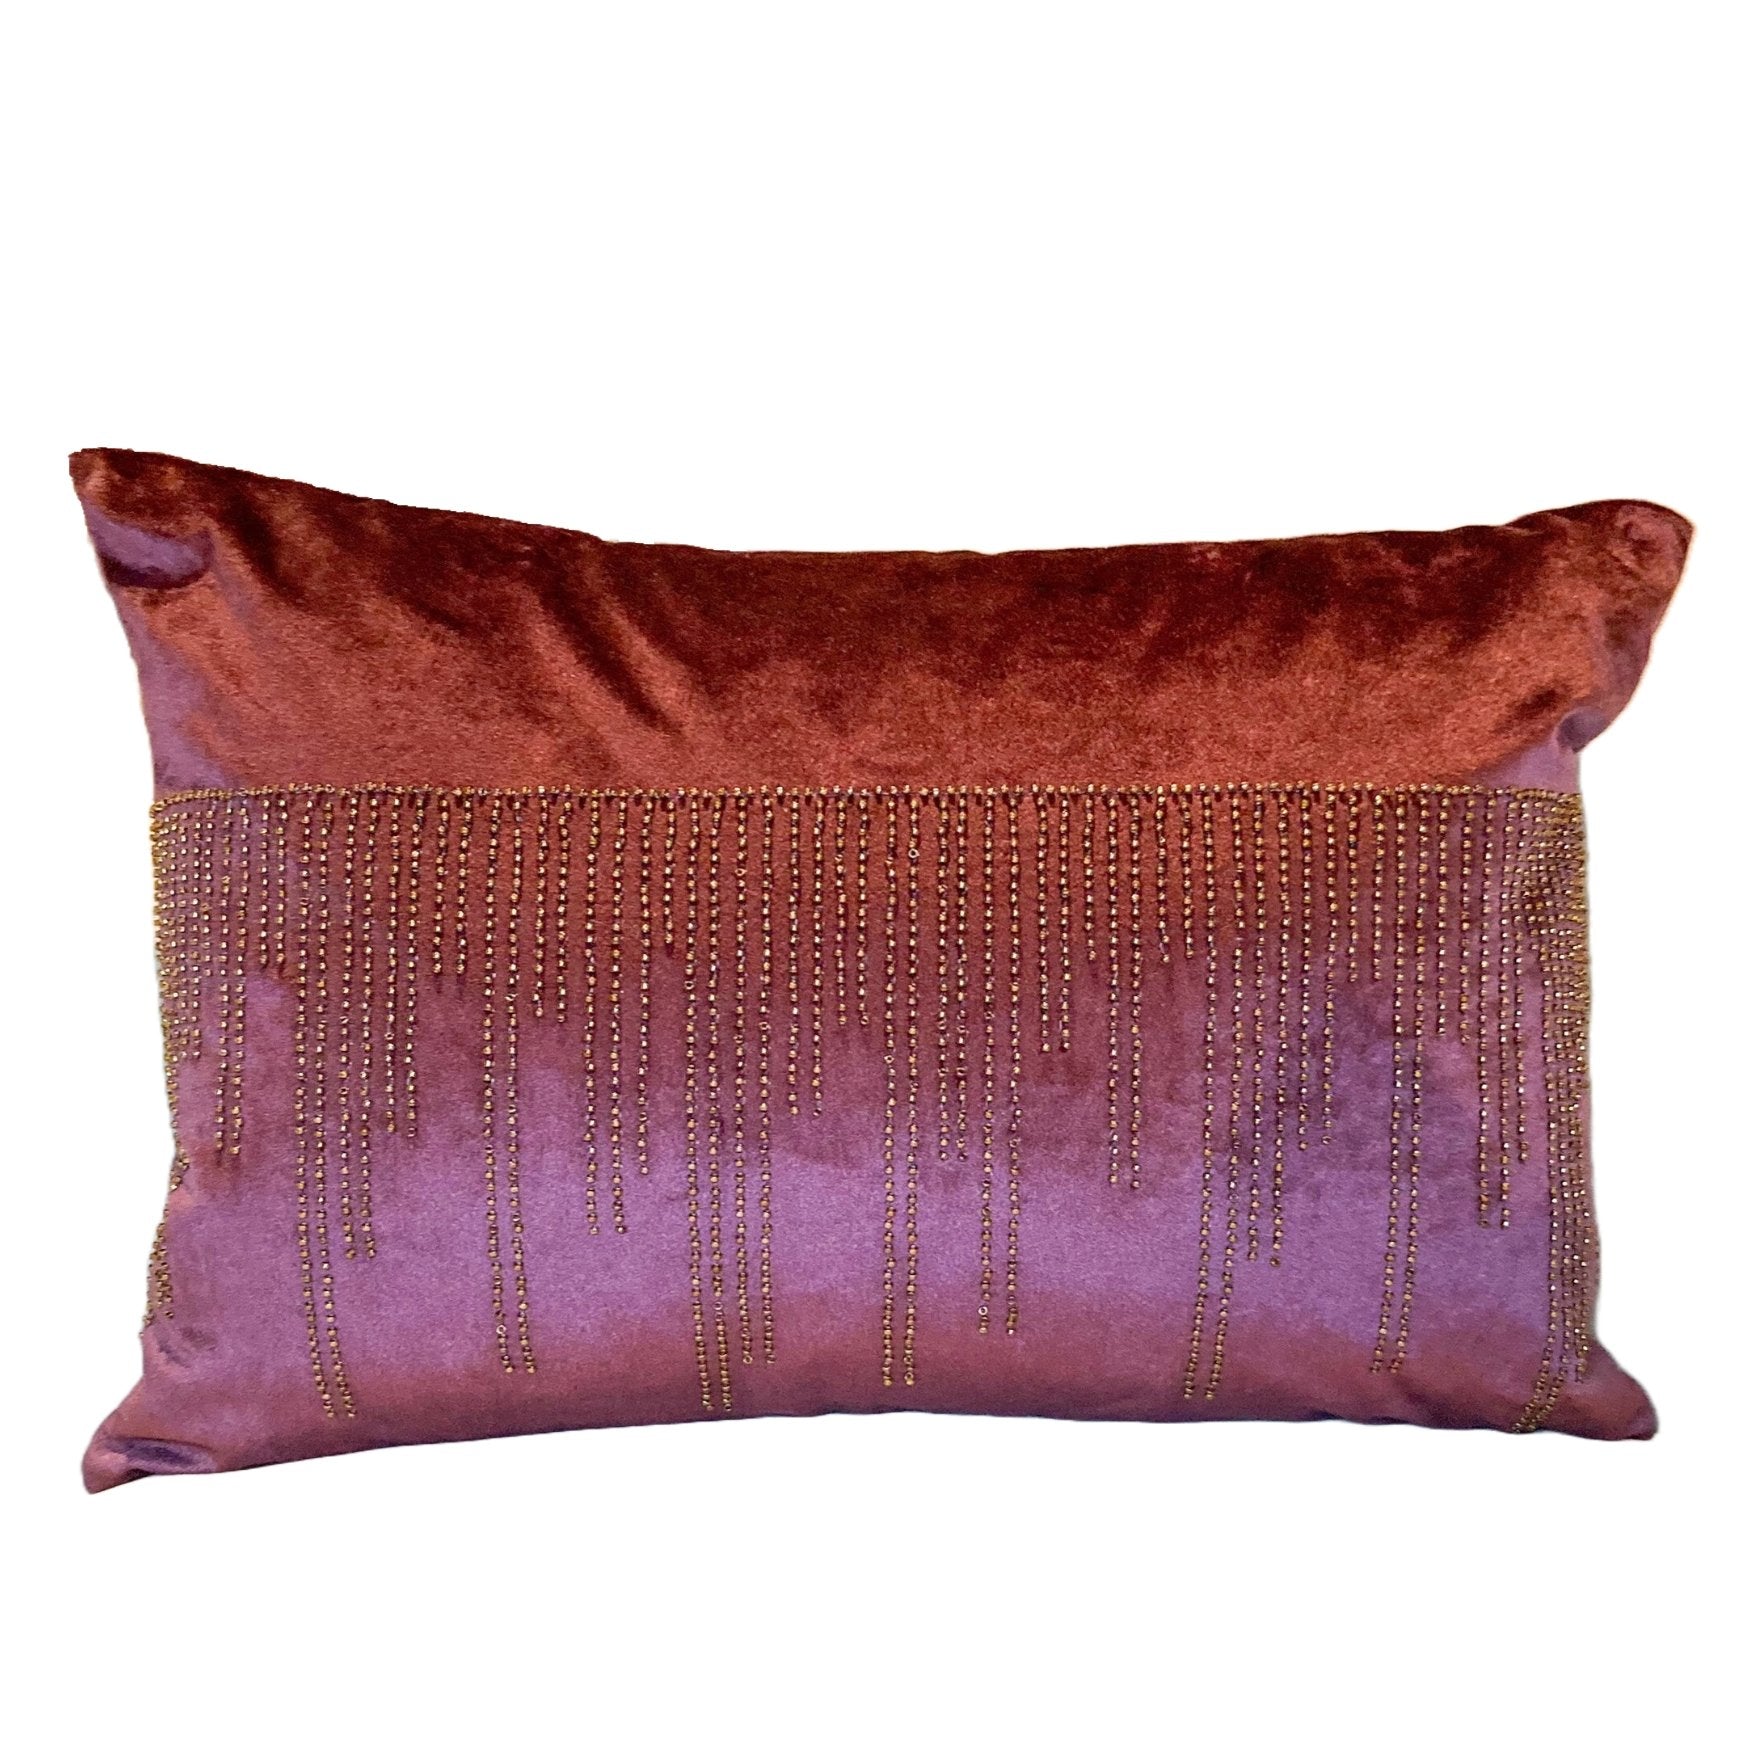 Plum Beaded Velvet Lumbar Pillow Cover - DiamondVale